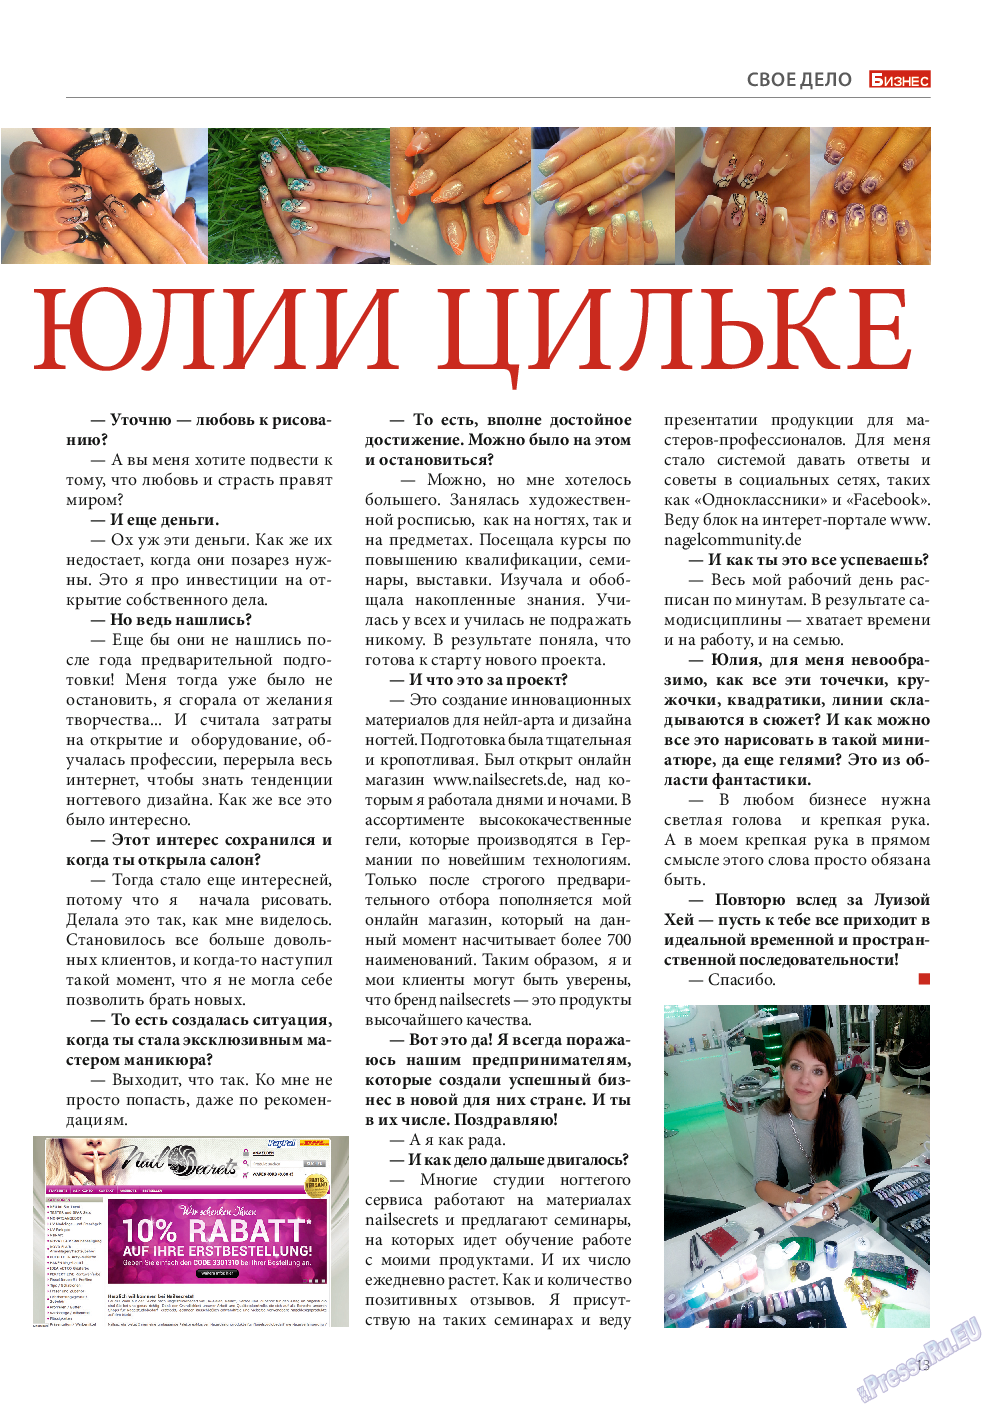 Бизнес, журнал. 2014 №10 стр.13